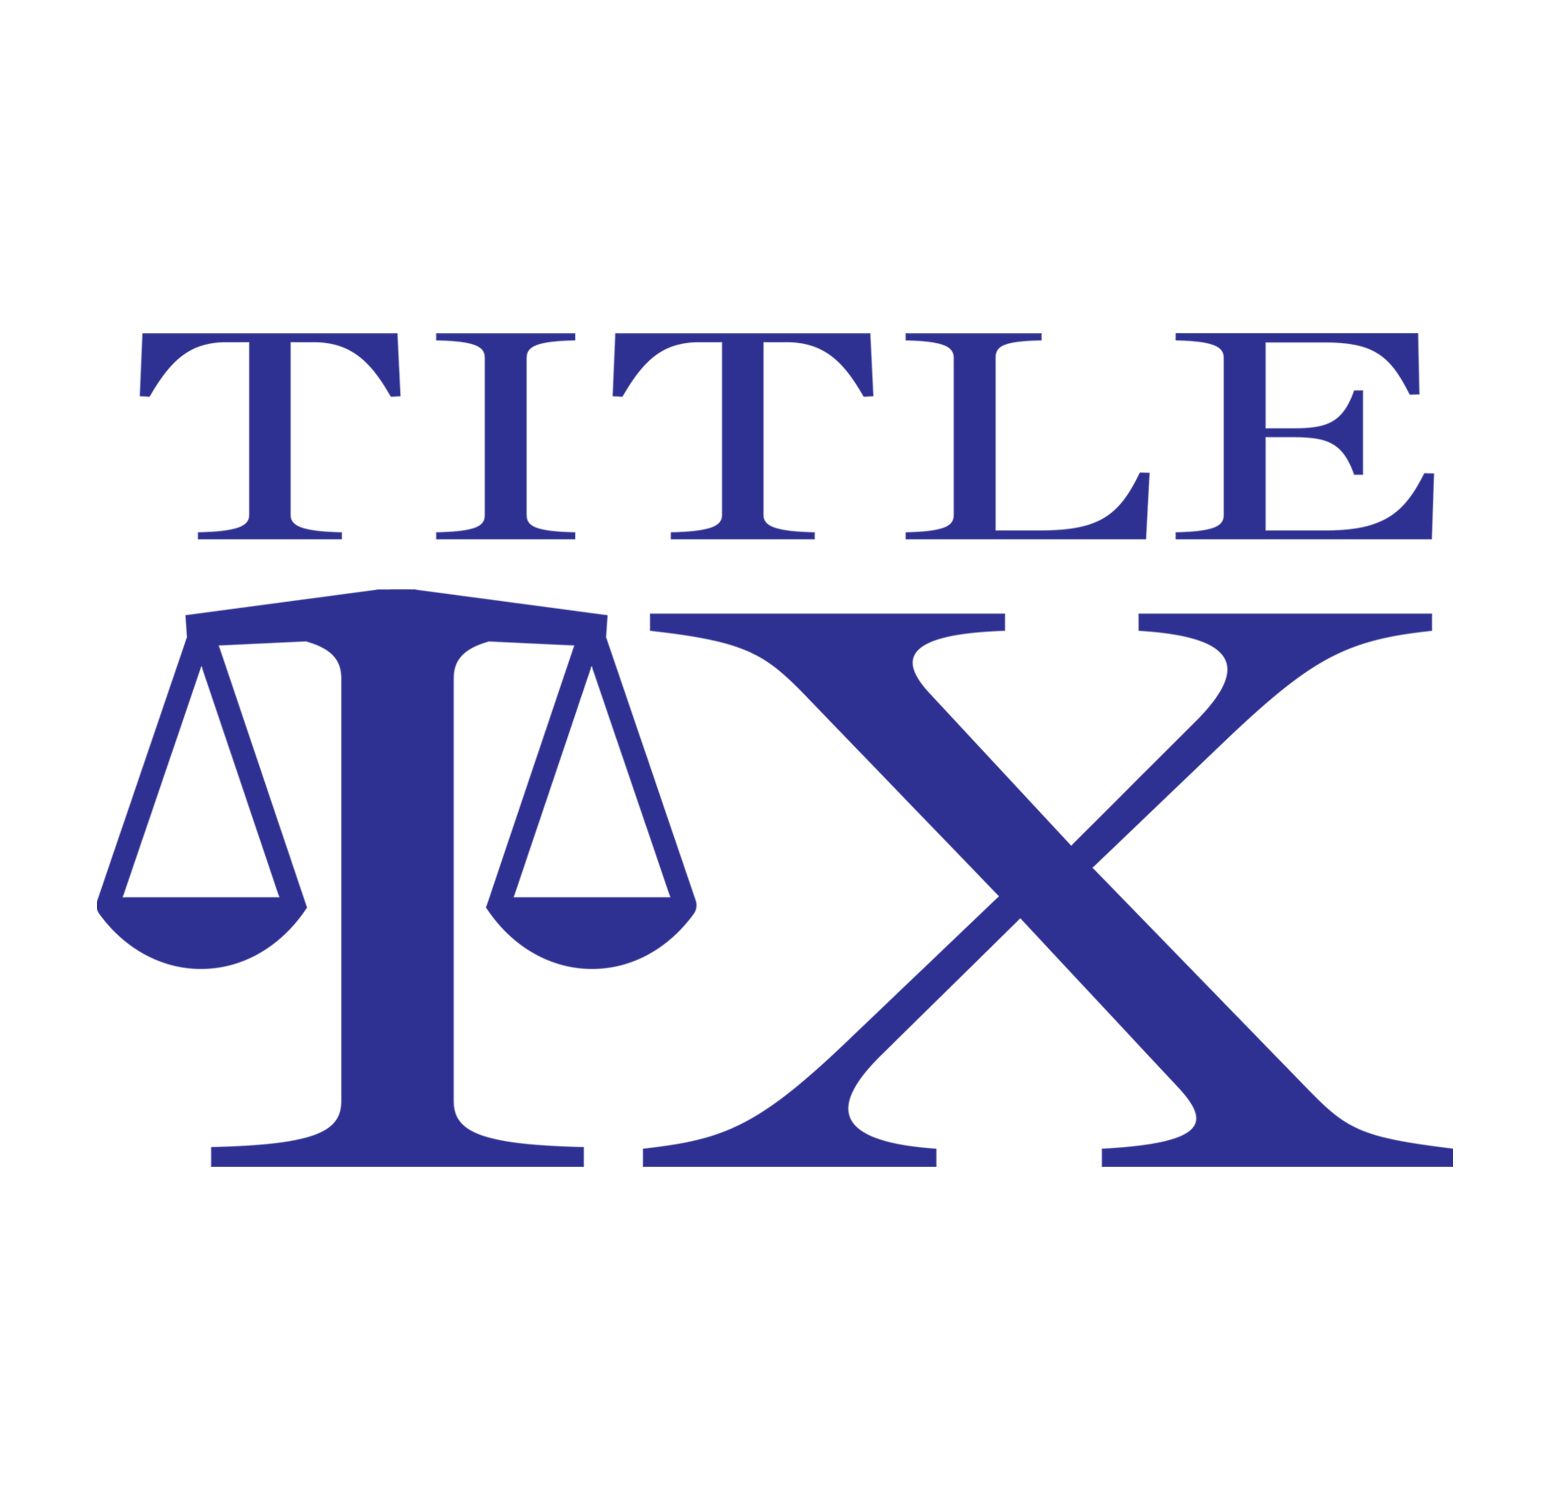 Transforming Title IX